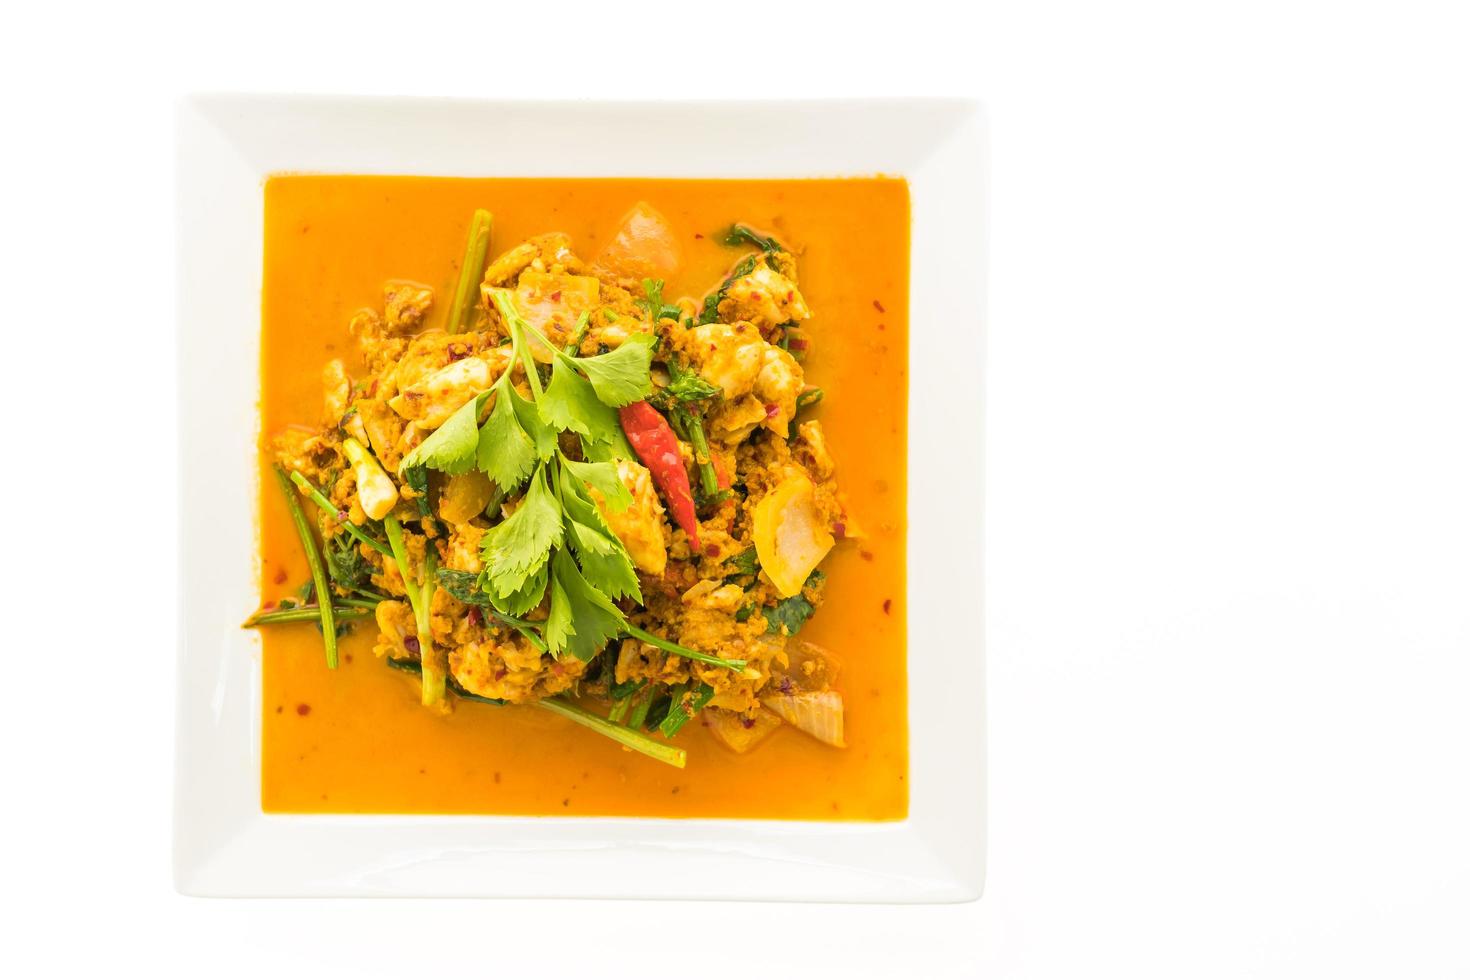 mexa caranguejo frito com curry no prato branco foto